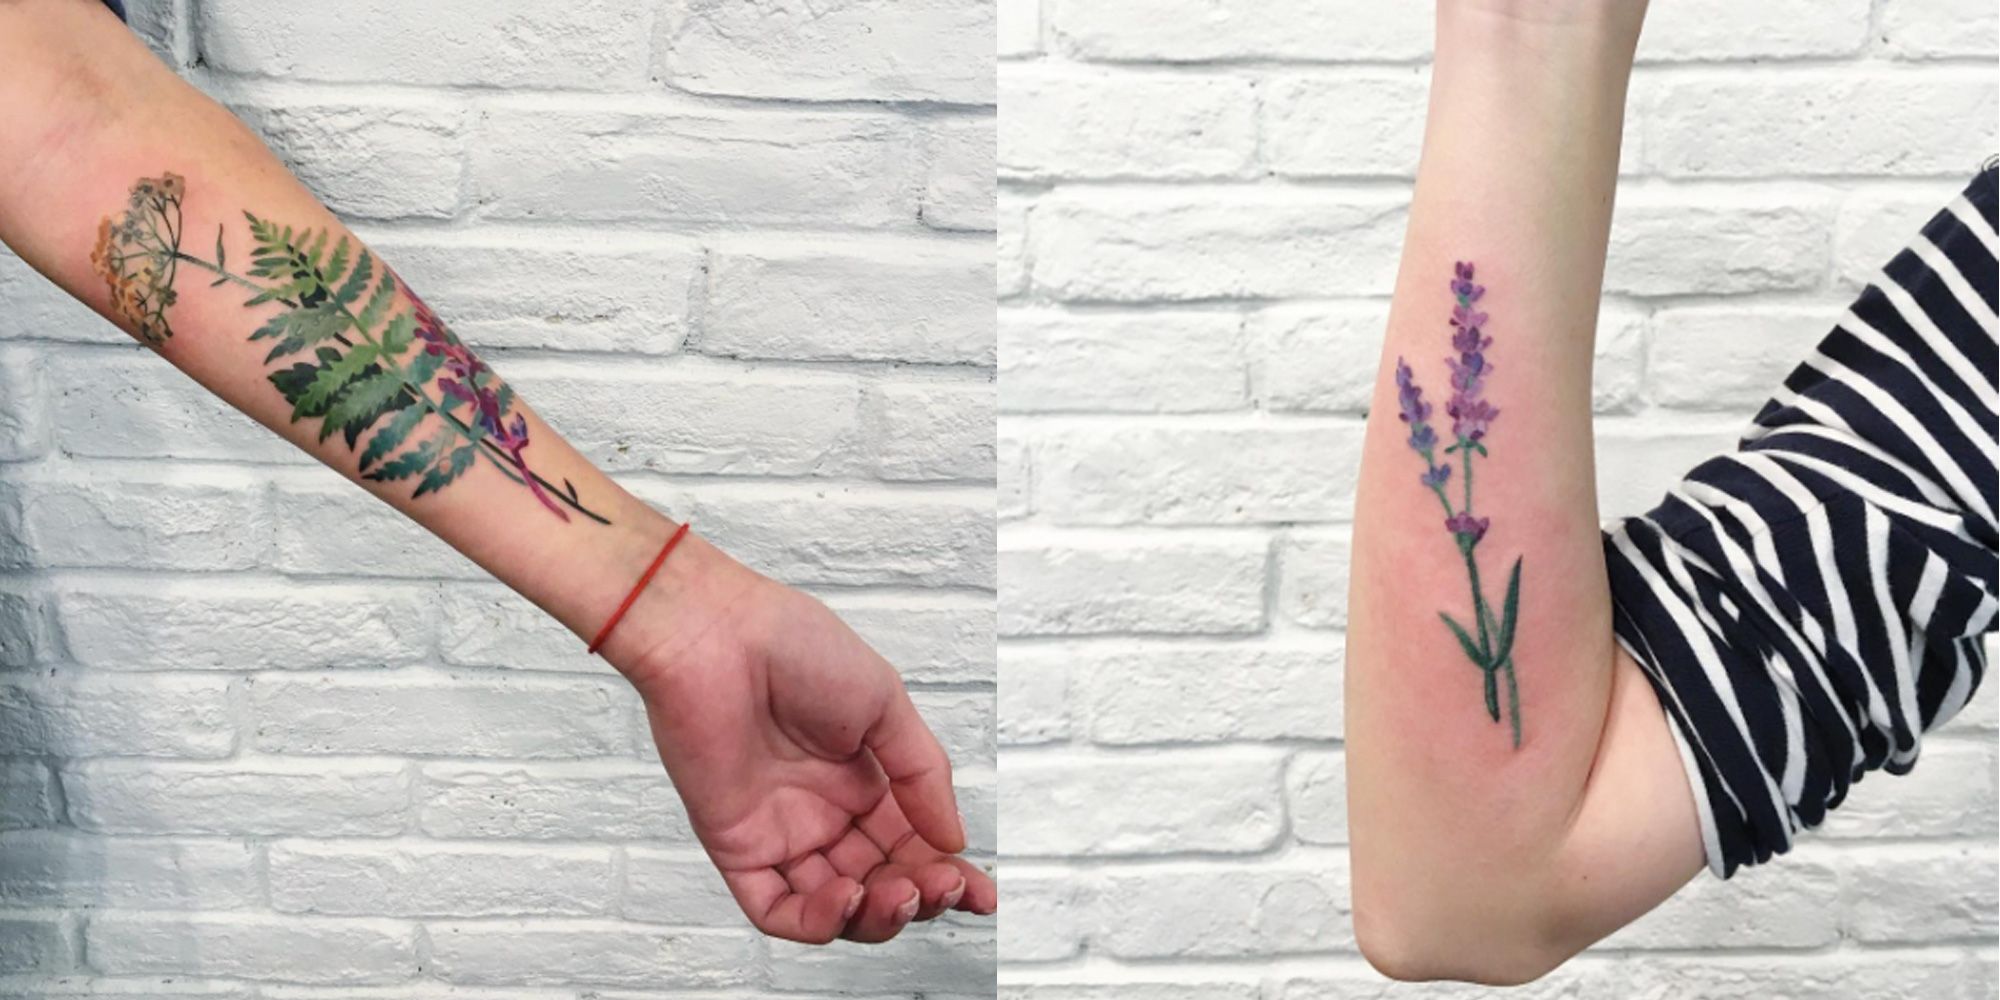 Adorable Mini Pot Plant Tattoos - Bring Nature Indoors 🌱🏠